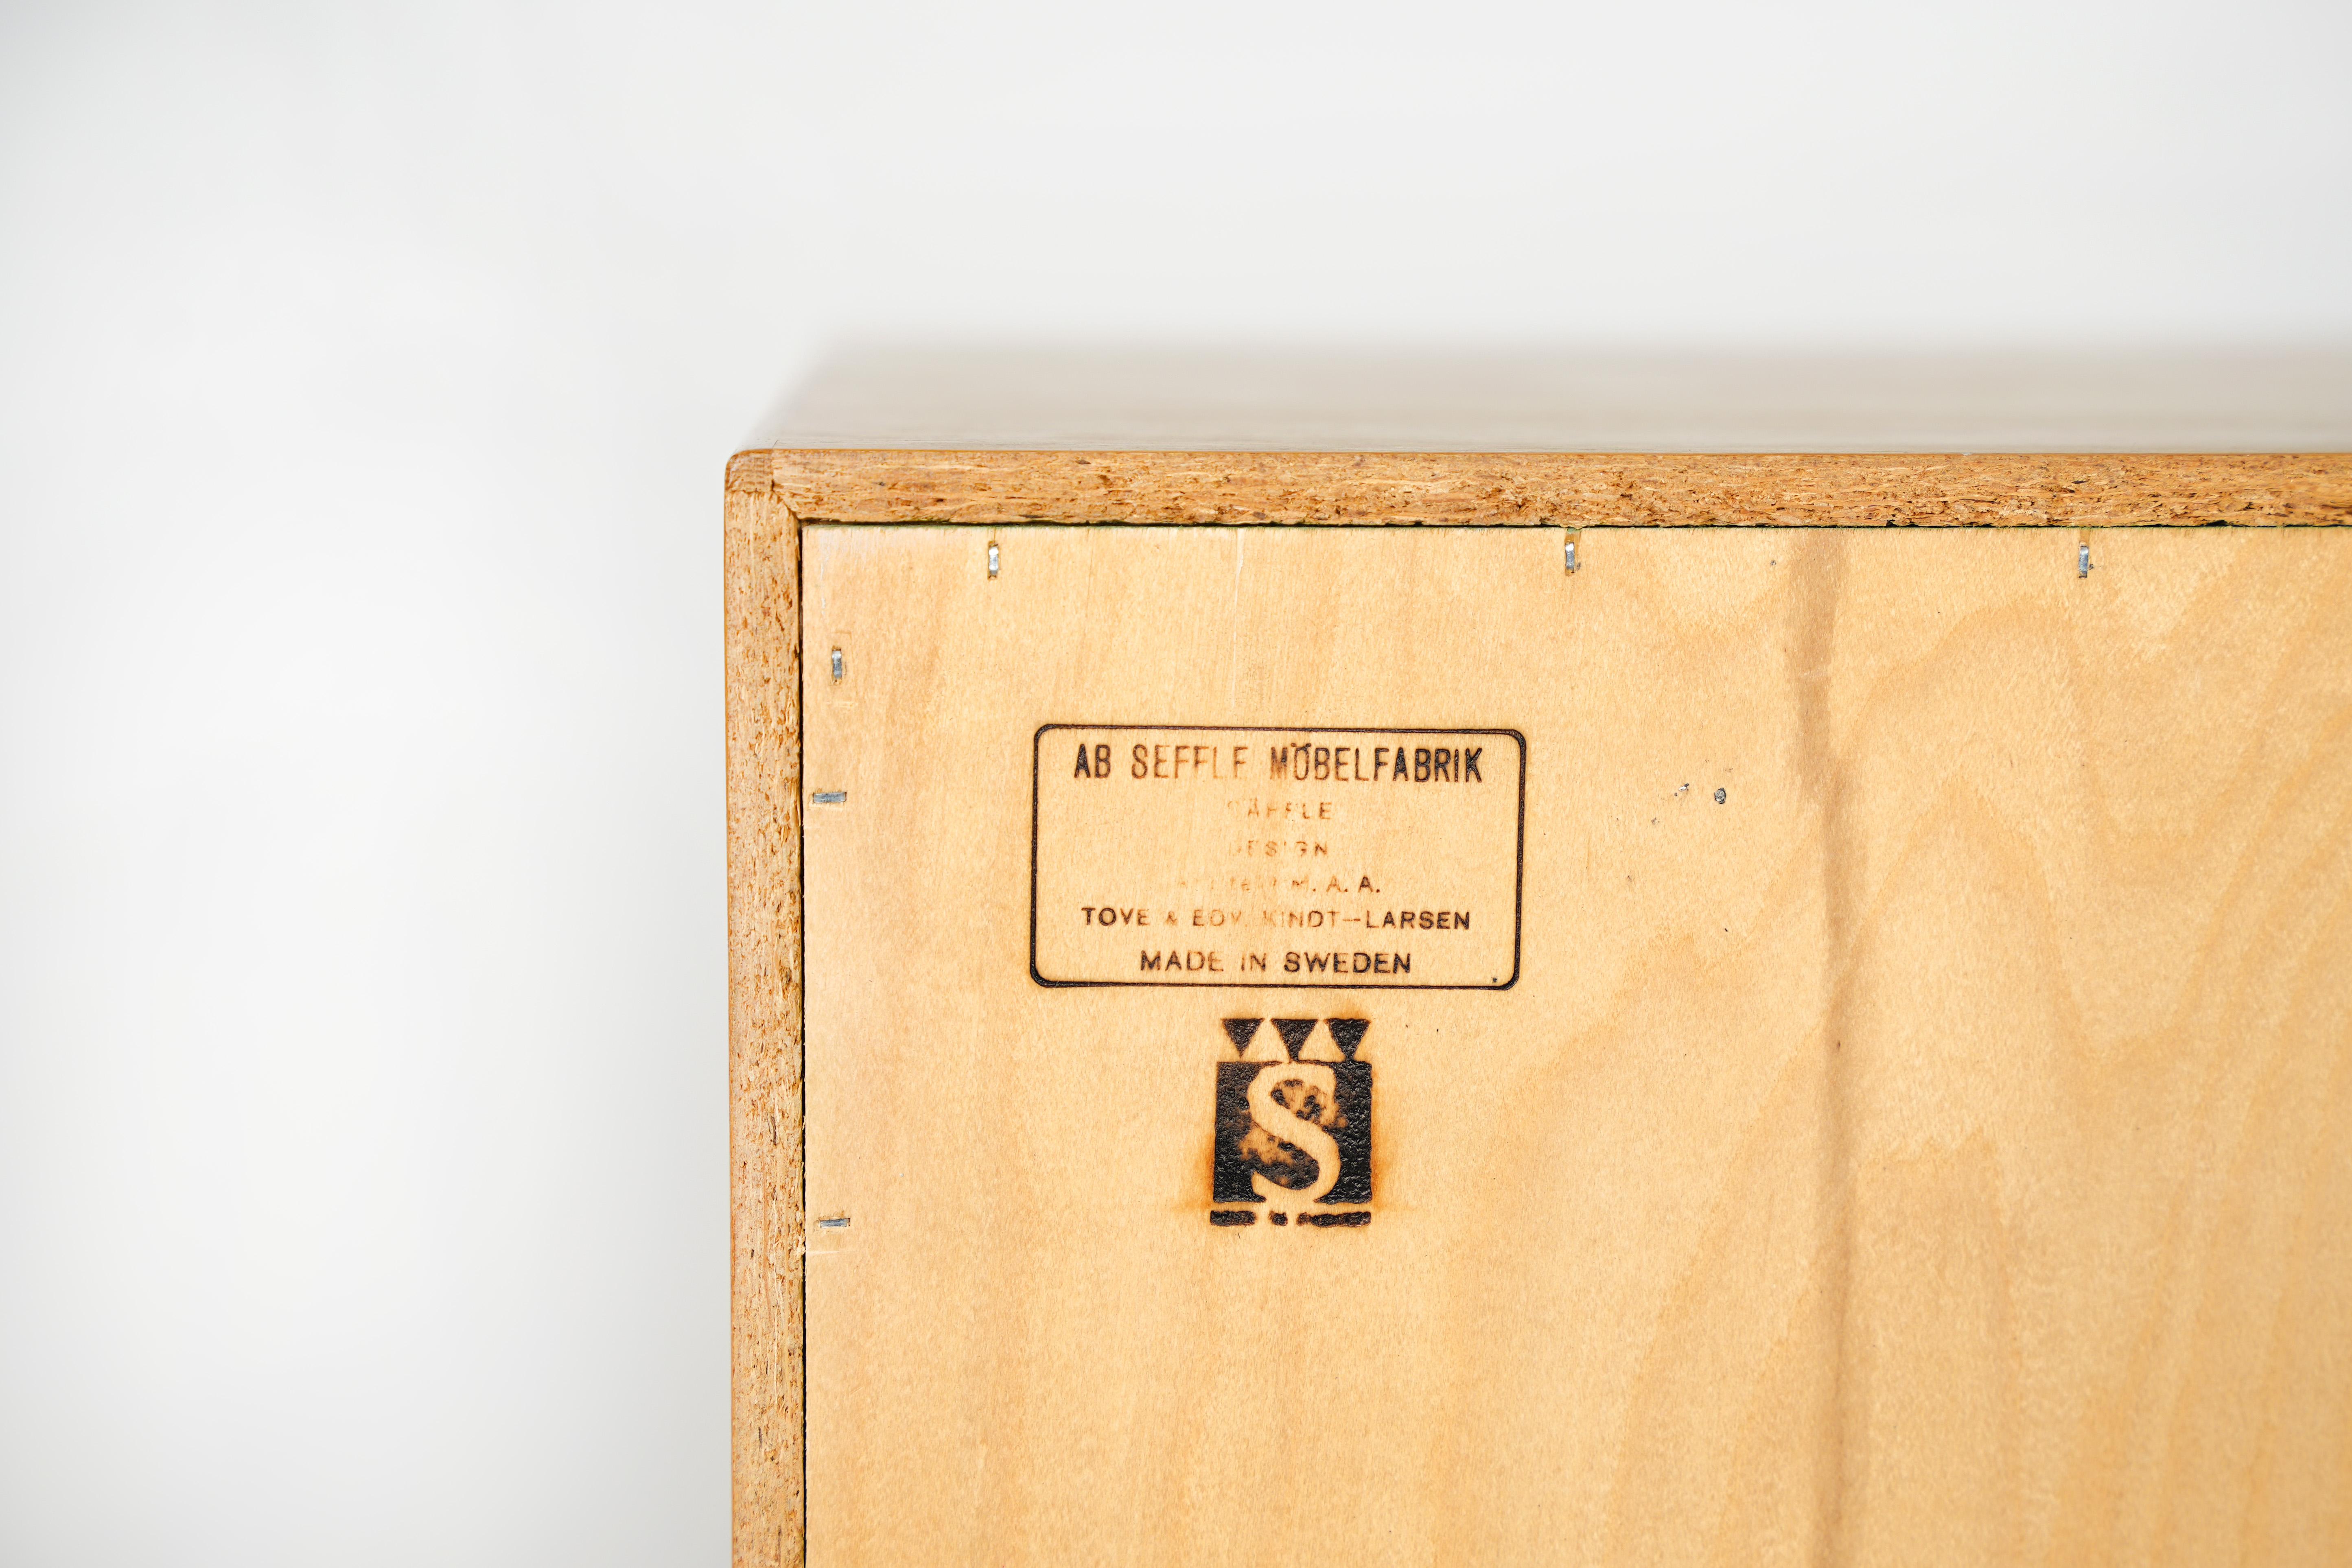 Rare Cabinet by Tove & Edvard Kindt-Larsen for Seffle Möbelfabrik, Denmark, 1961 For Sale 6